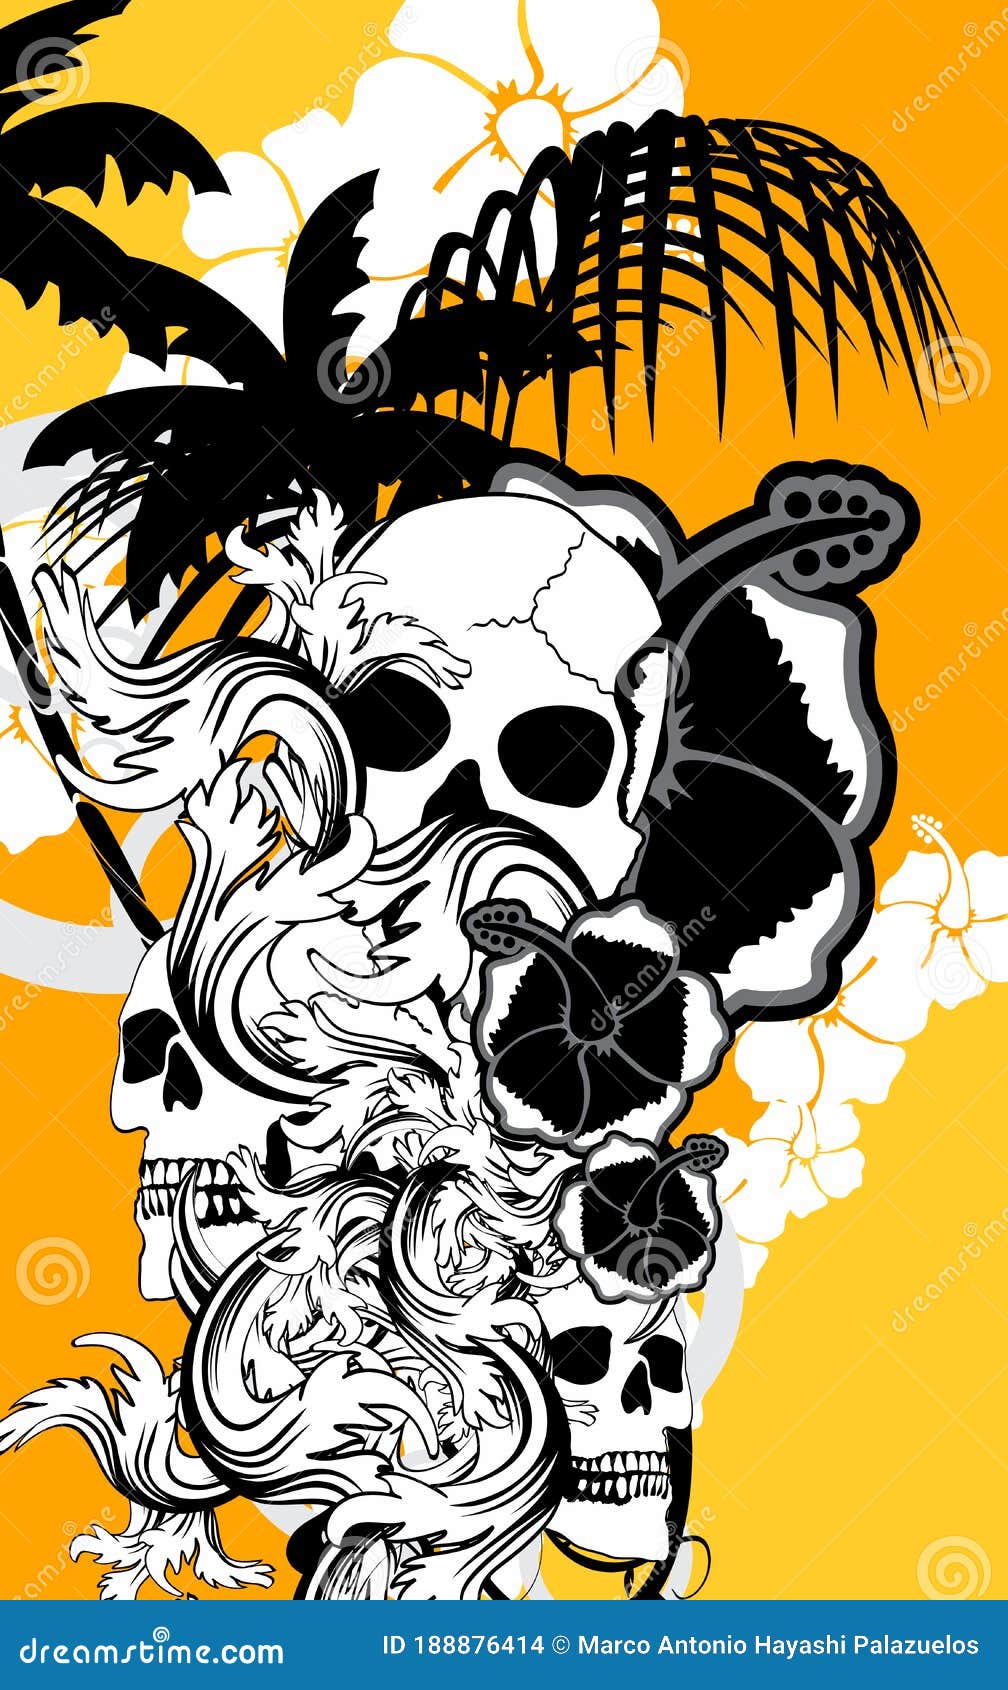 Hawaii Skull Graffiti Tattoo Wallpaper Background Stock Vector -  Illustration of grunge, cartoon: 188876414